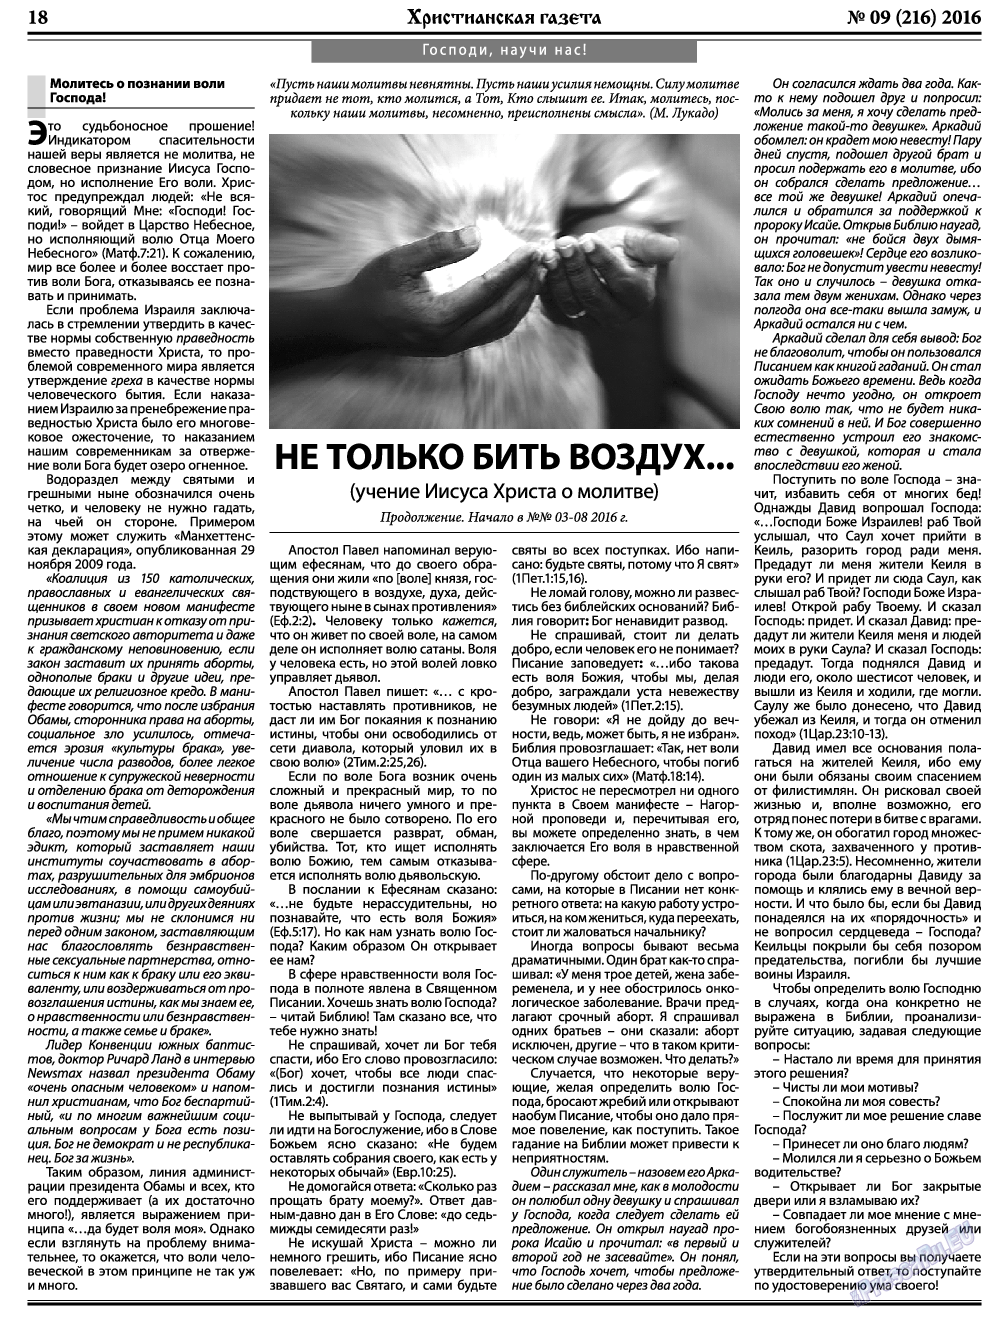 Христианская газета, газета. 2016 №9 стр.26